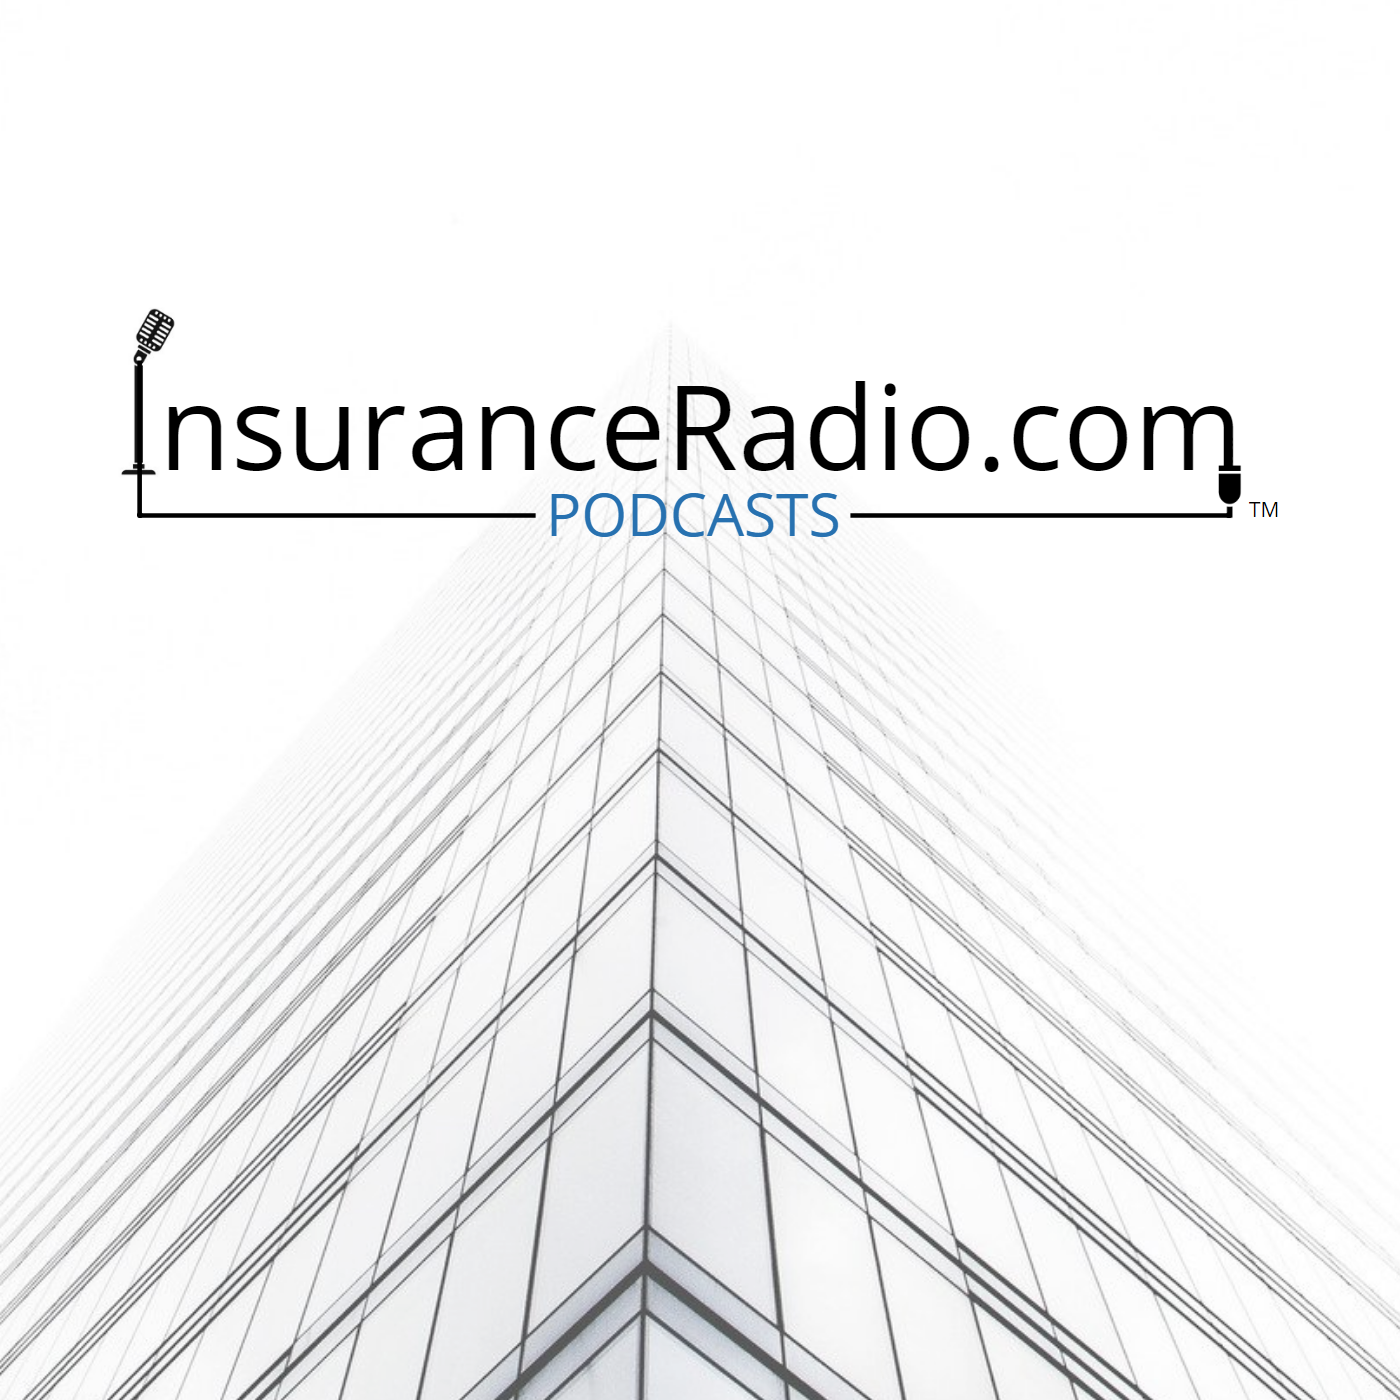 InsuranceRadio.com